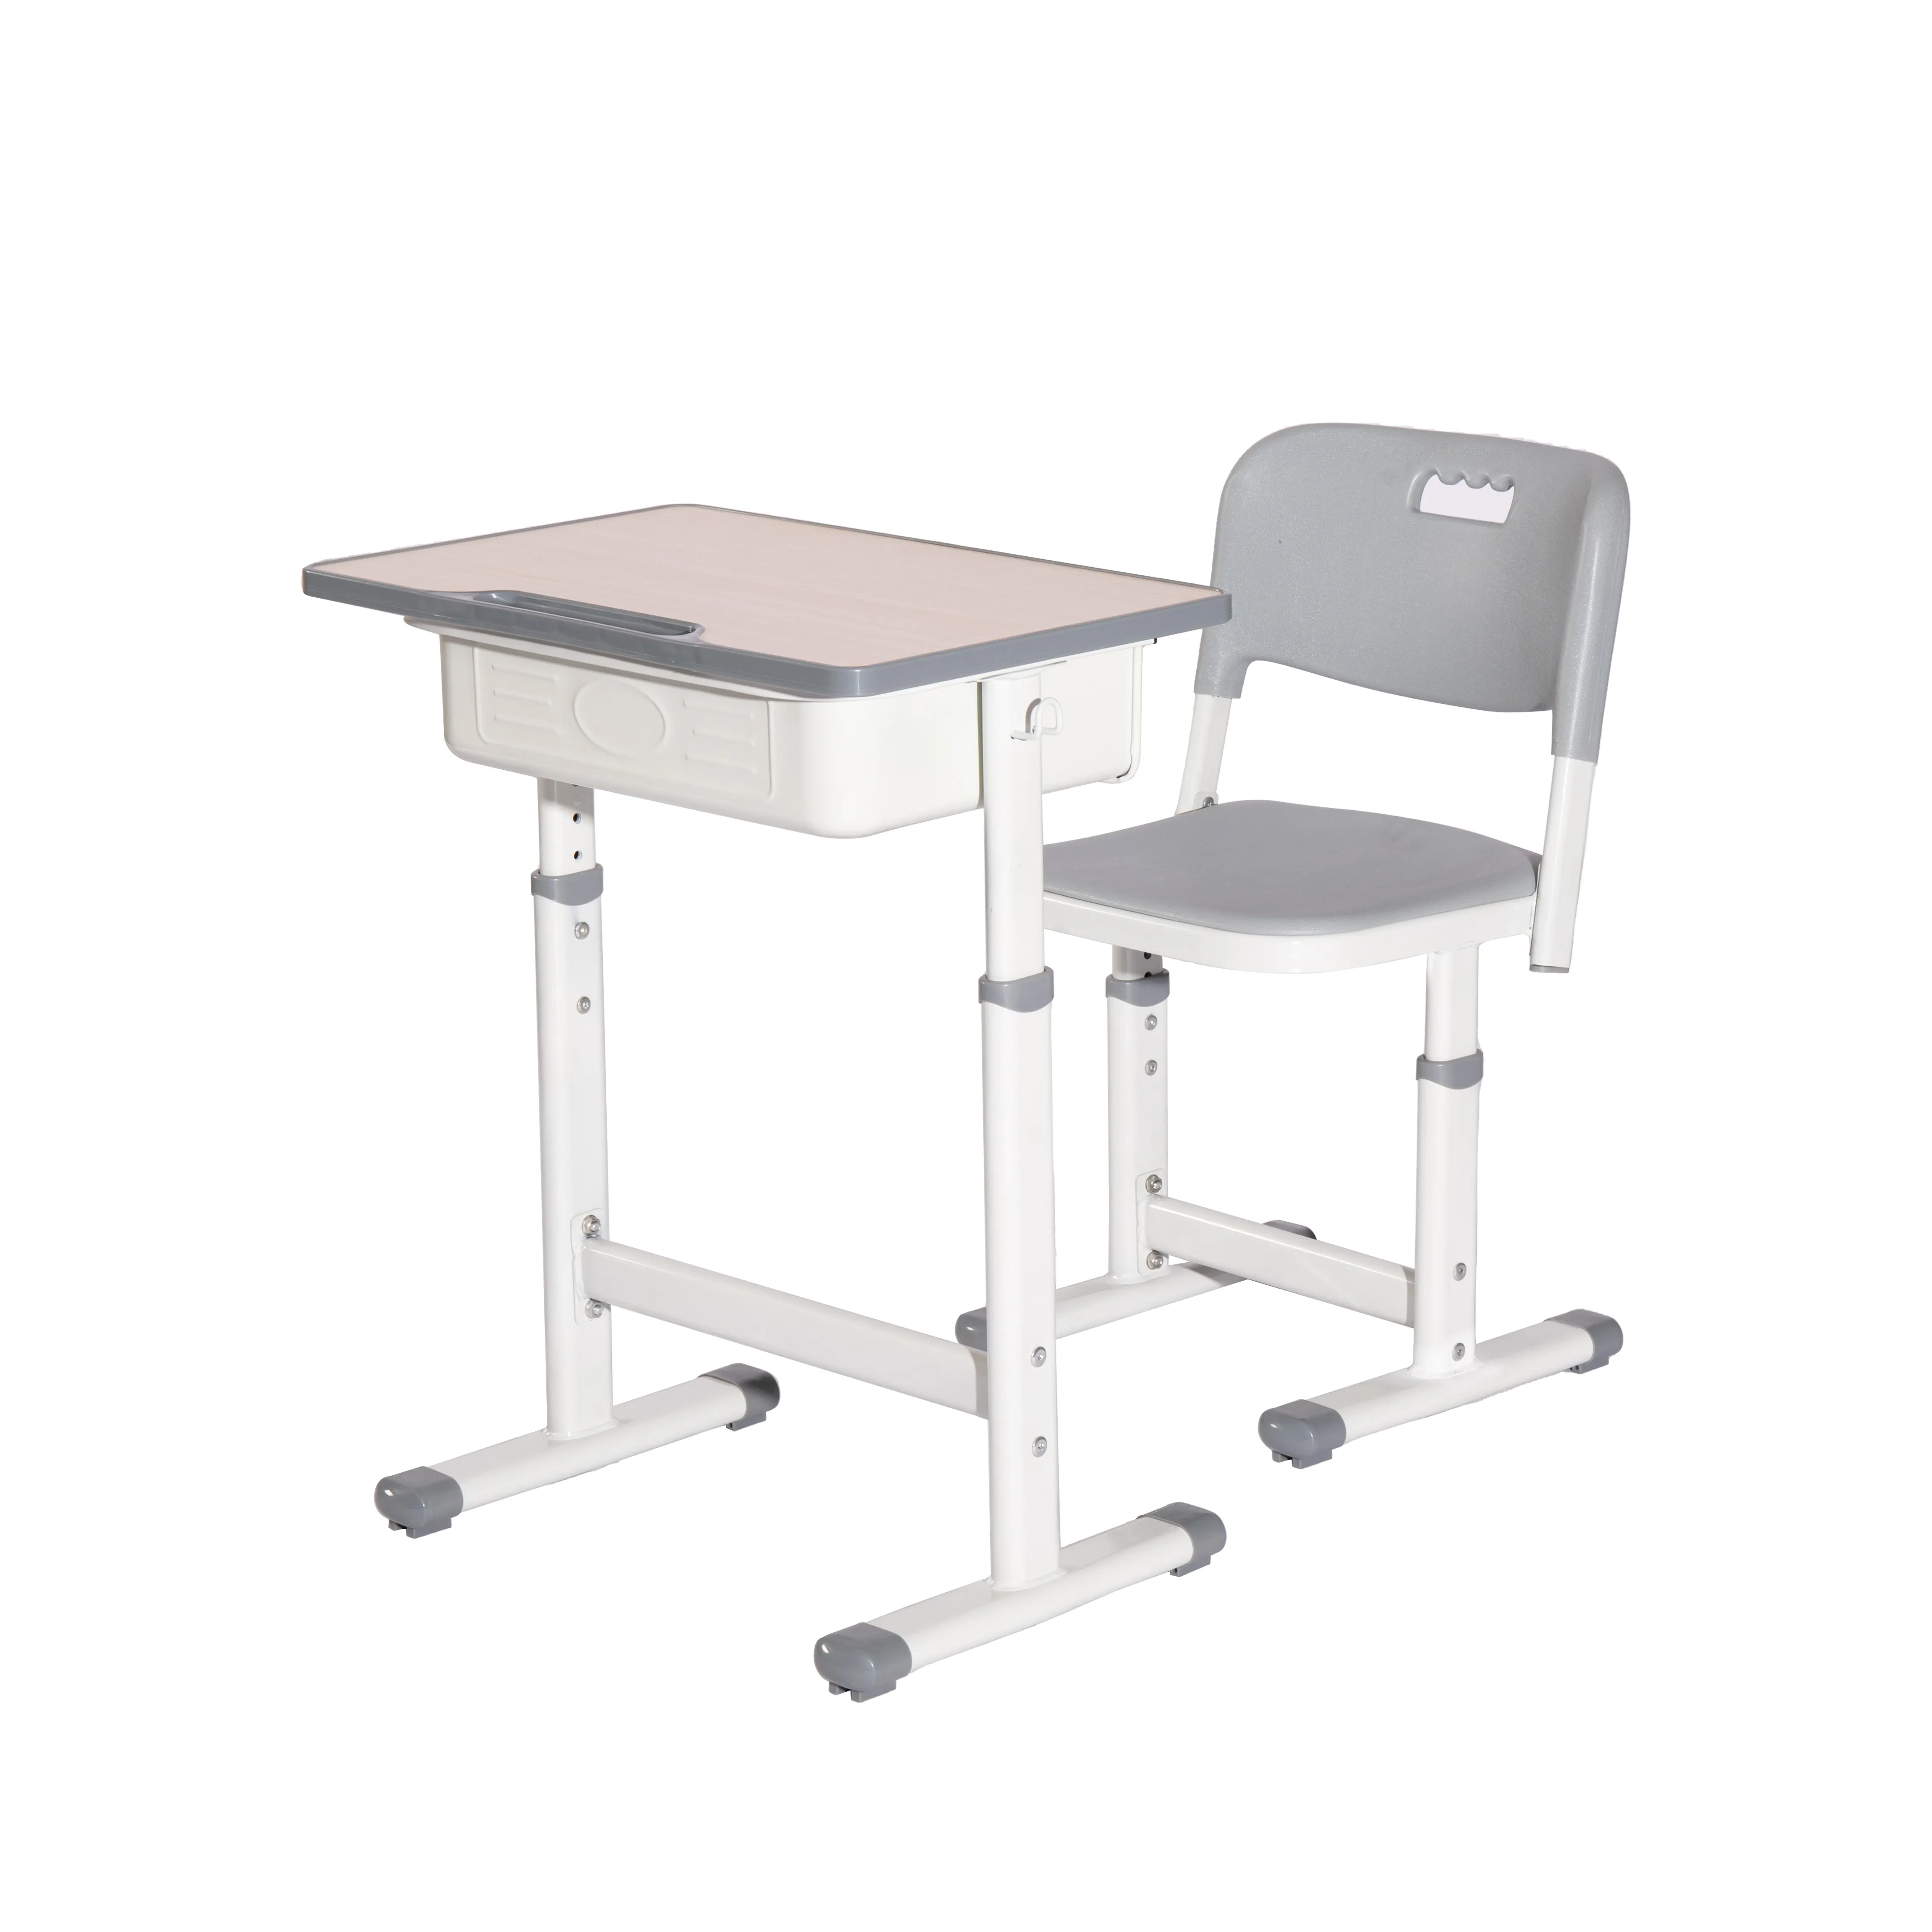 높이 조절 가능한 금속 학생 책상 및 의자 중학교 및 초등학교 및 대학을위한 현대적인 디자인